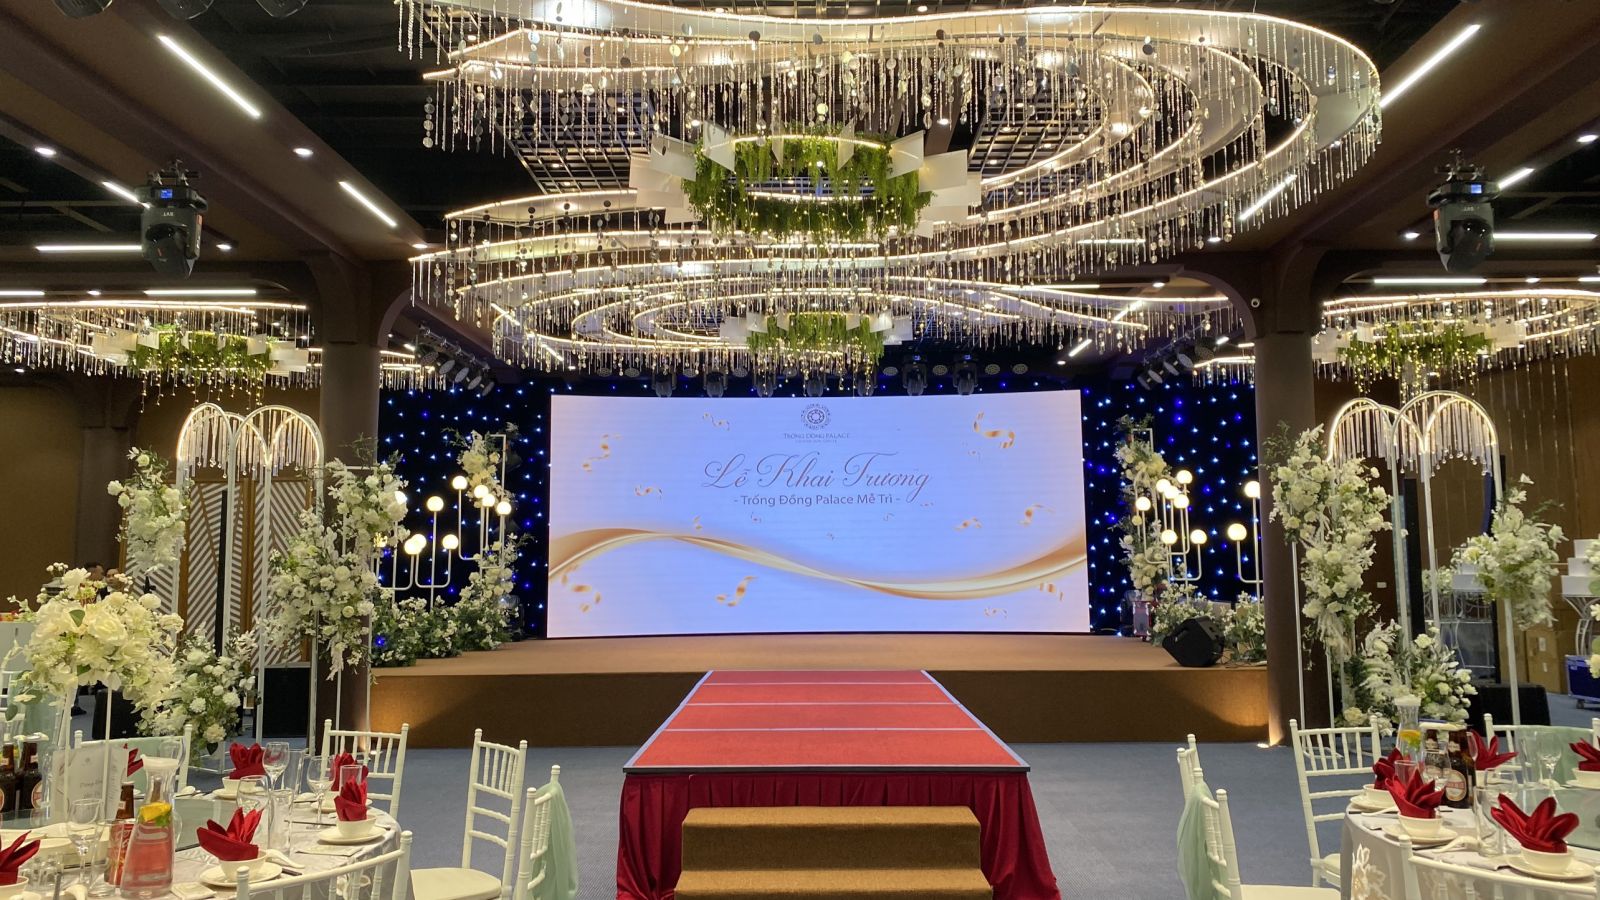 Lắp đặt hệ thống âm thanh Trung tâm tiệc cưới 1000m2 Trống Đồng Palace tại Hà Nội